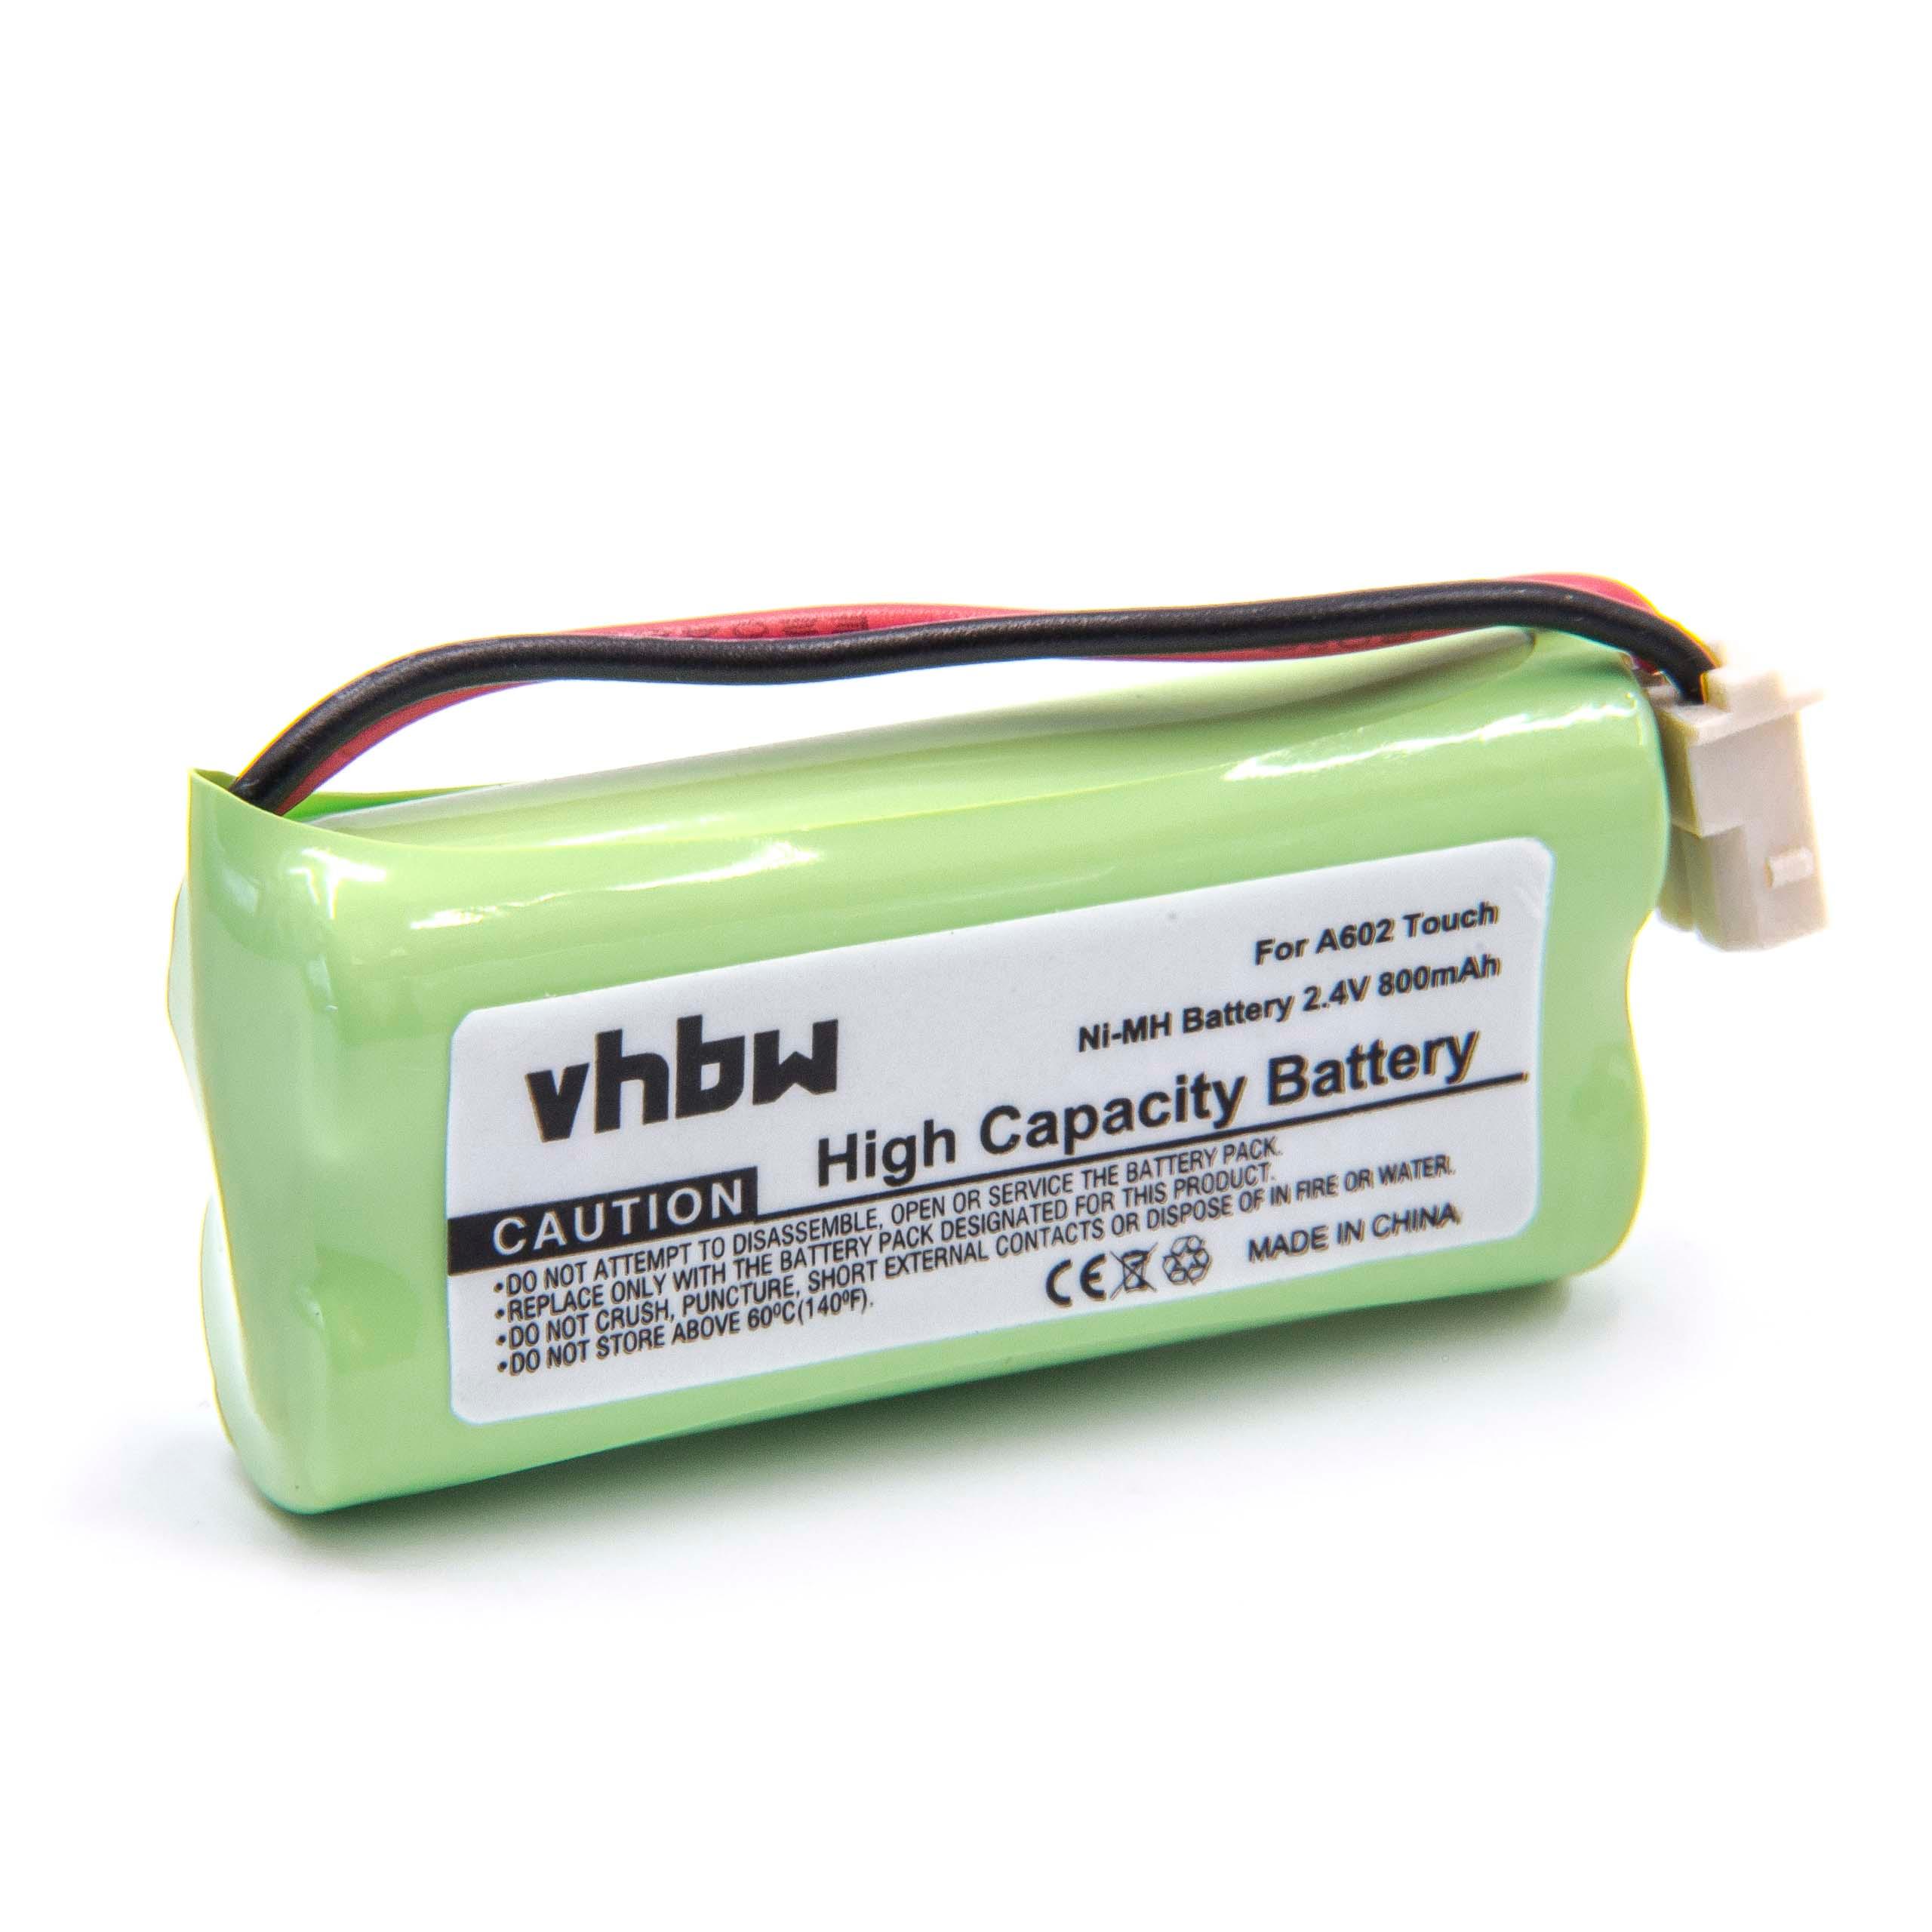 Batterie remplace V-Tech BT166342, 43AAA70PS2, BT266342 pour moniteur bébé - 800mAh 2,4V NiMH